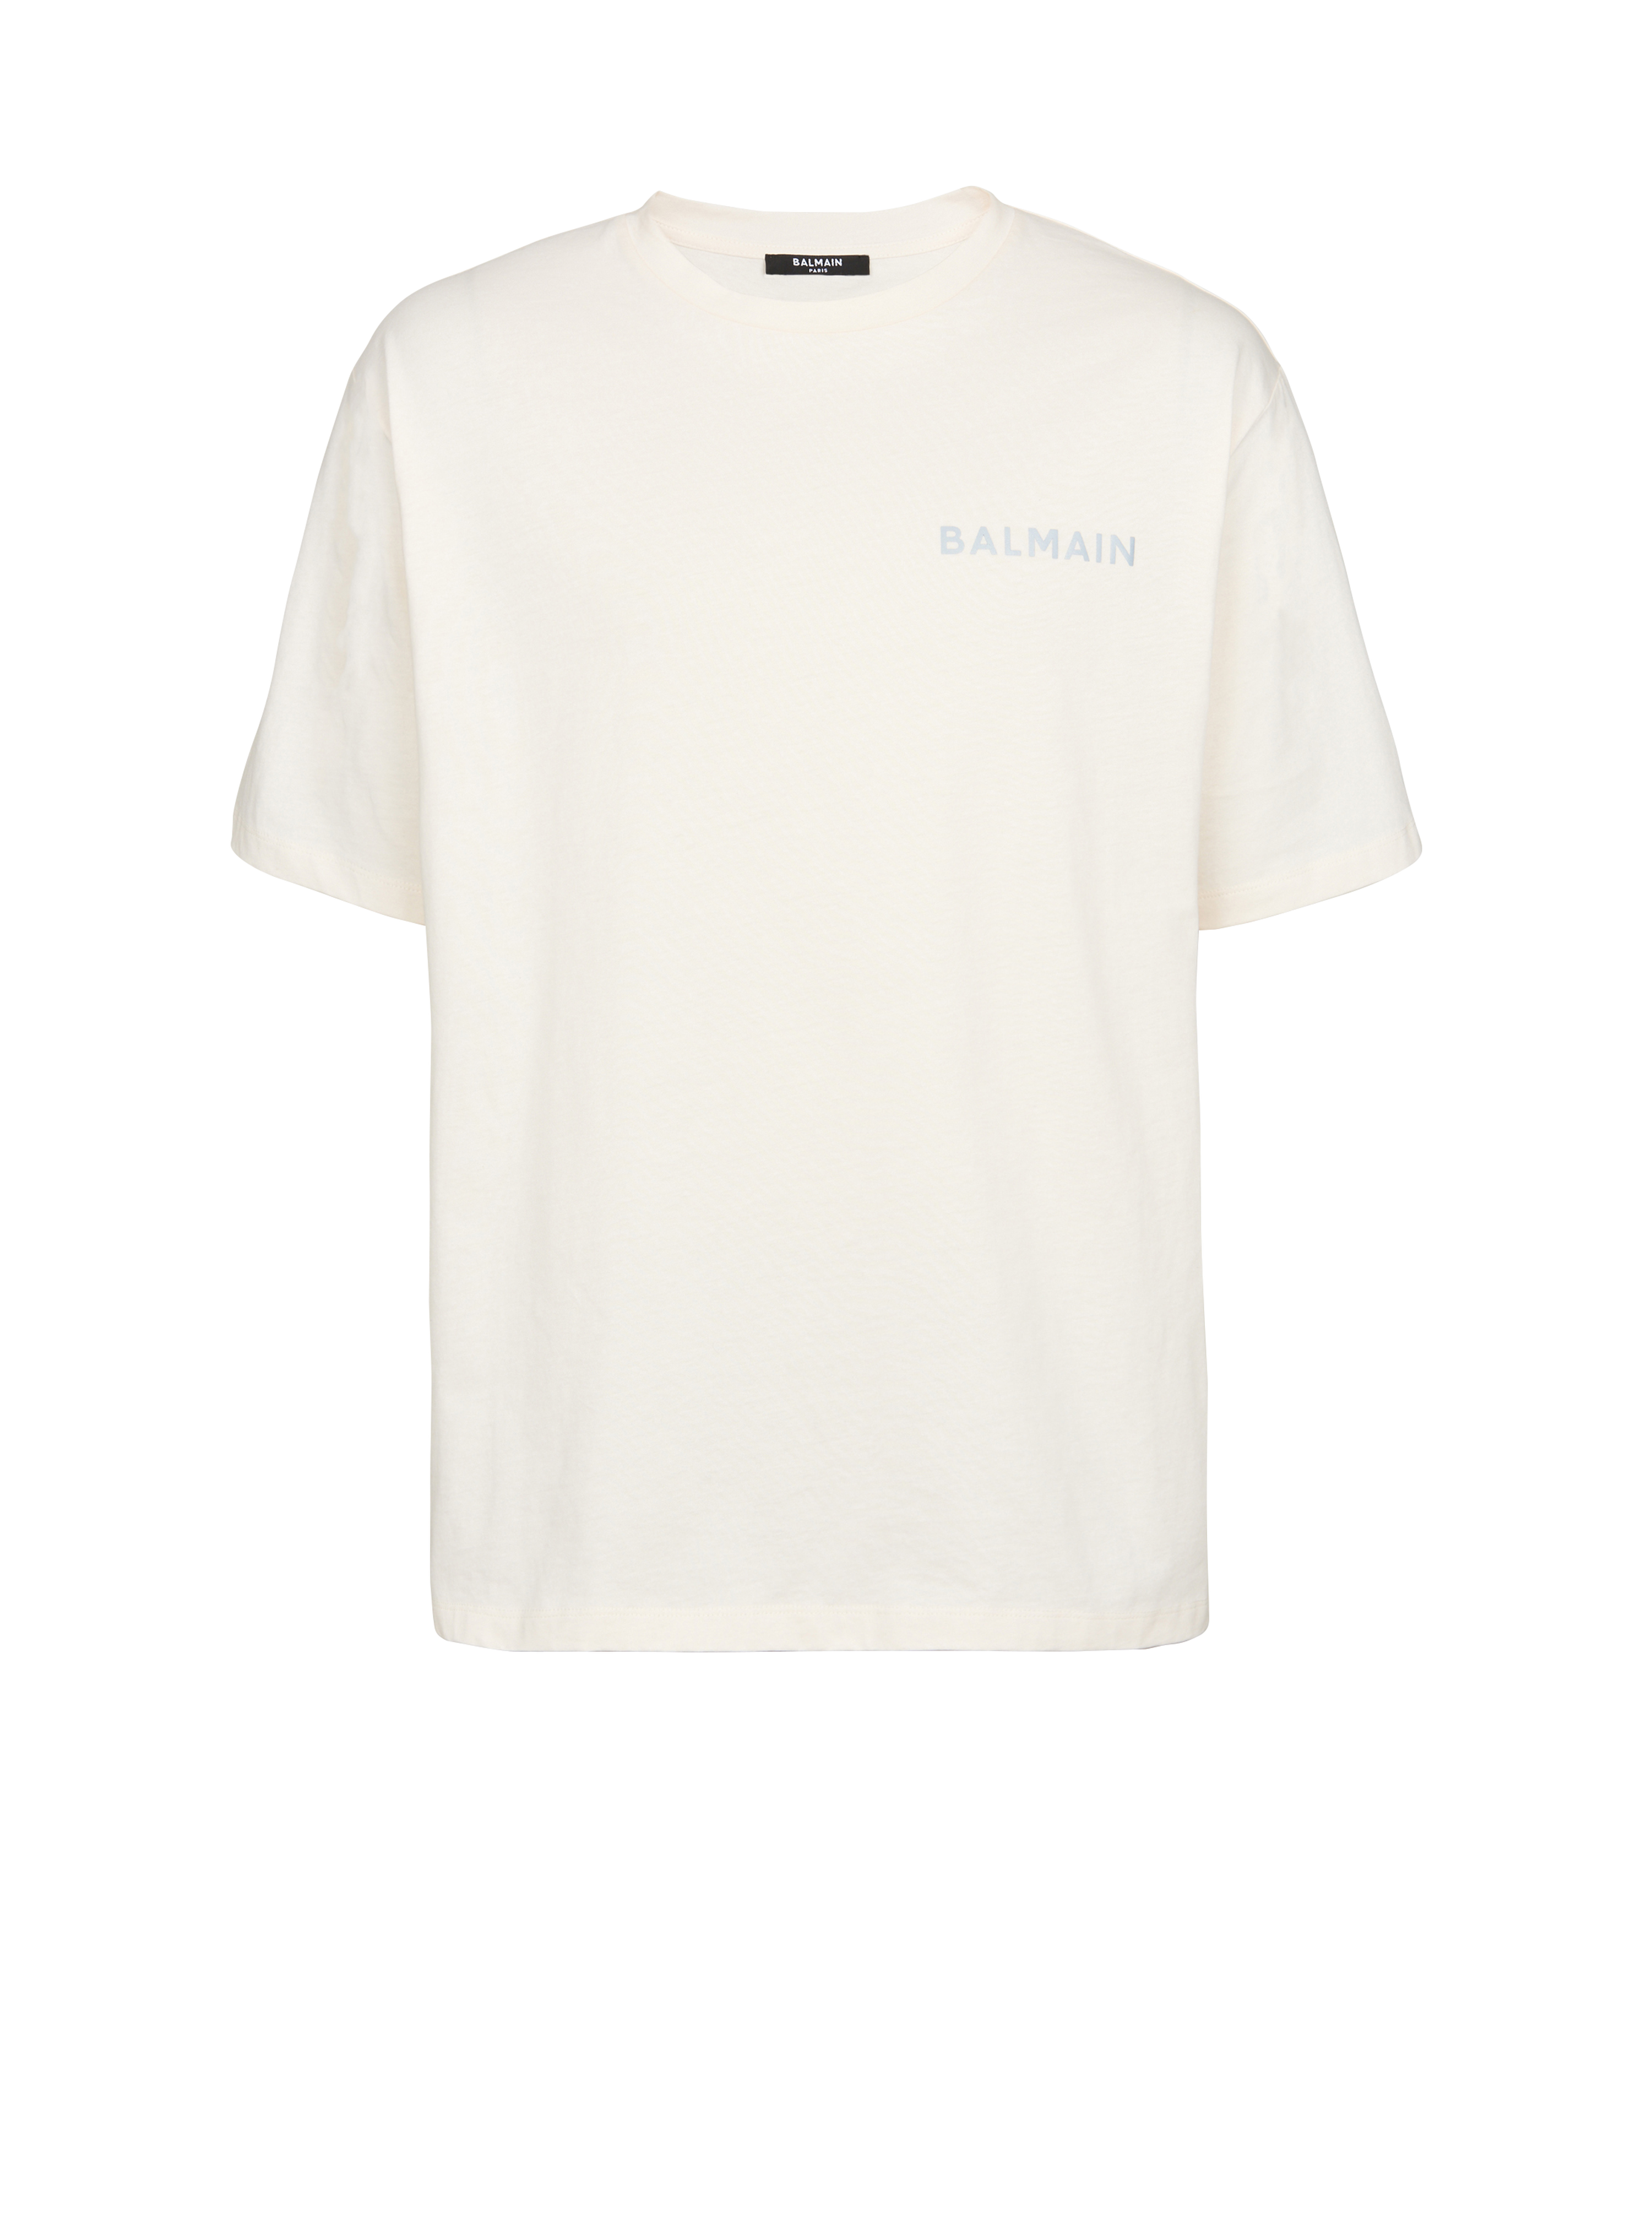 T-shirt in cotone con logo piccolo Balmain Paris stampato, beige